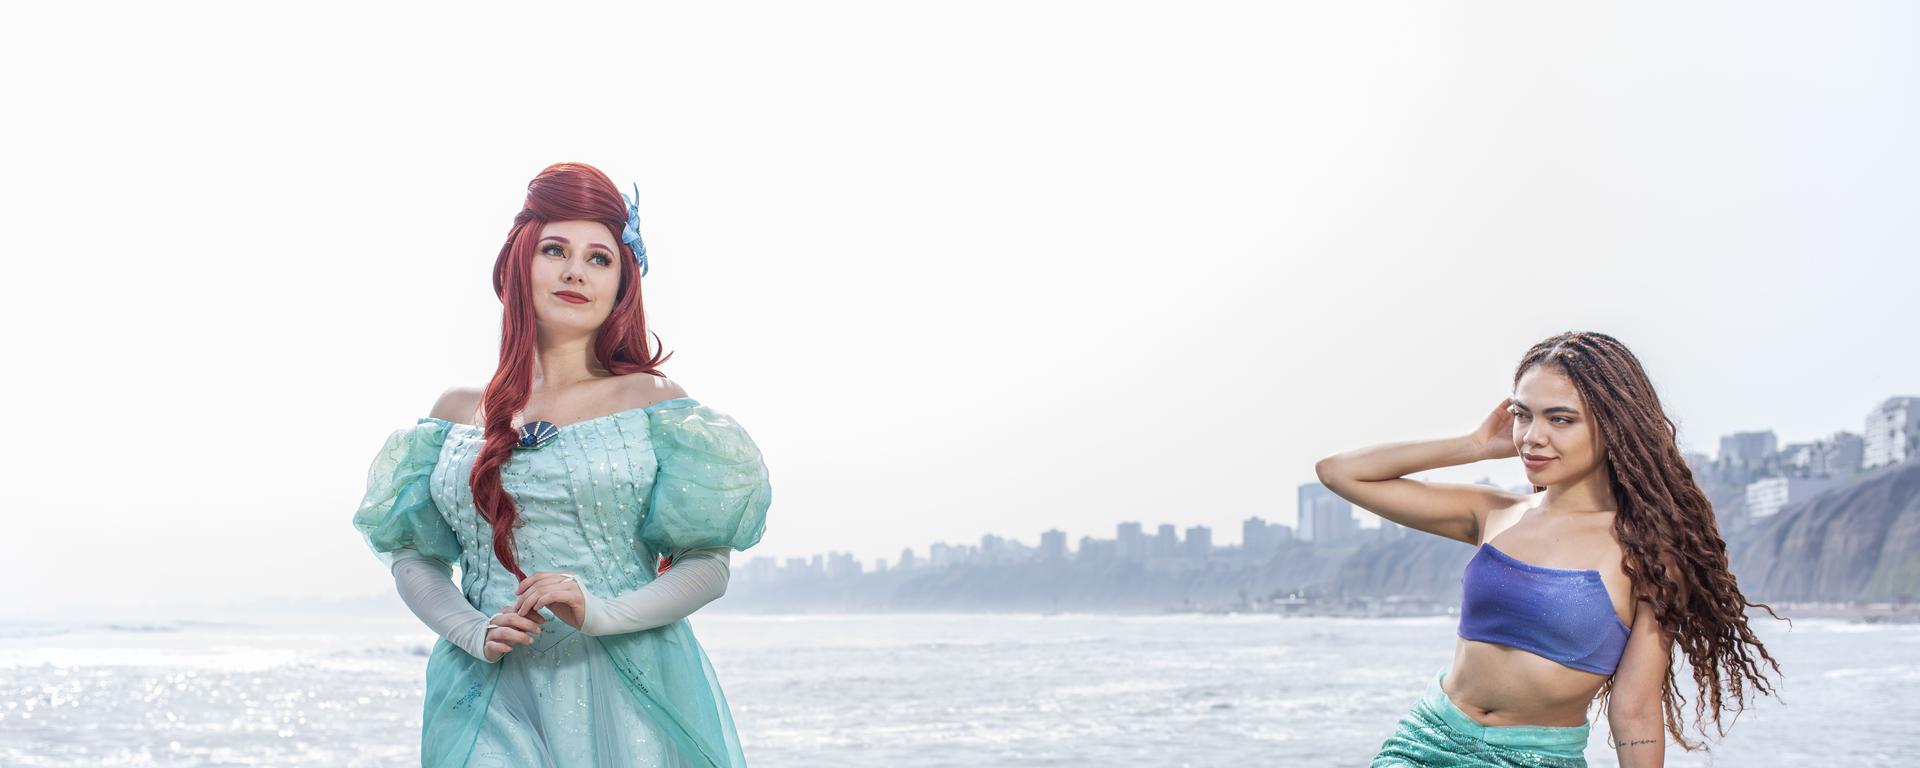 La Sirenita: fans y coleccionistas que se inspiran en el popular personaje de Disney